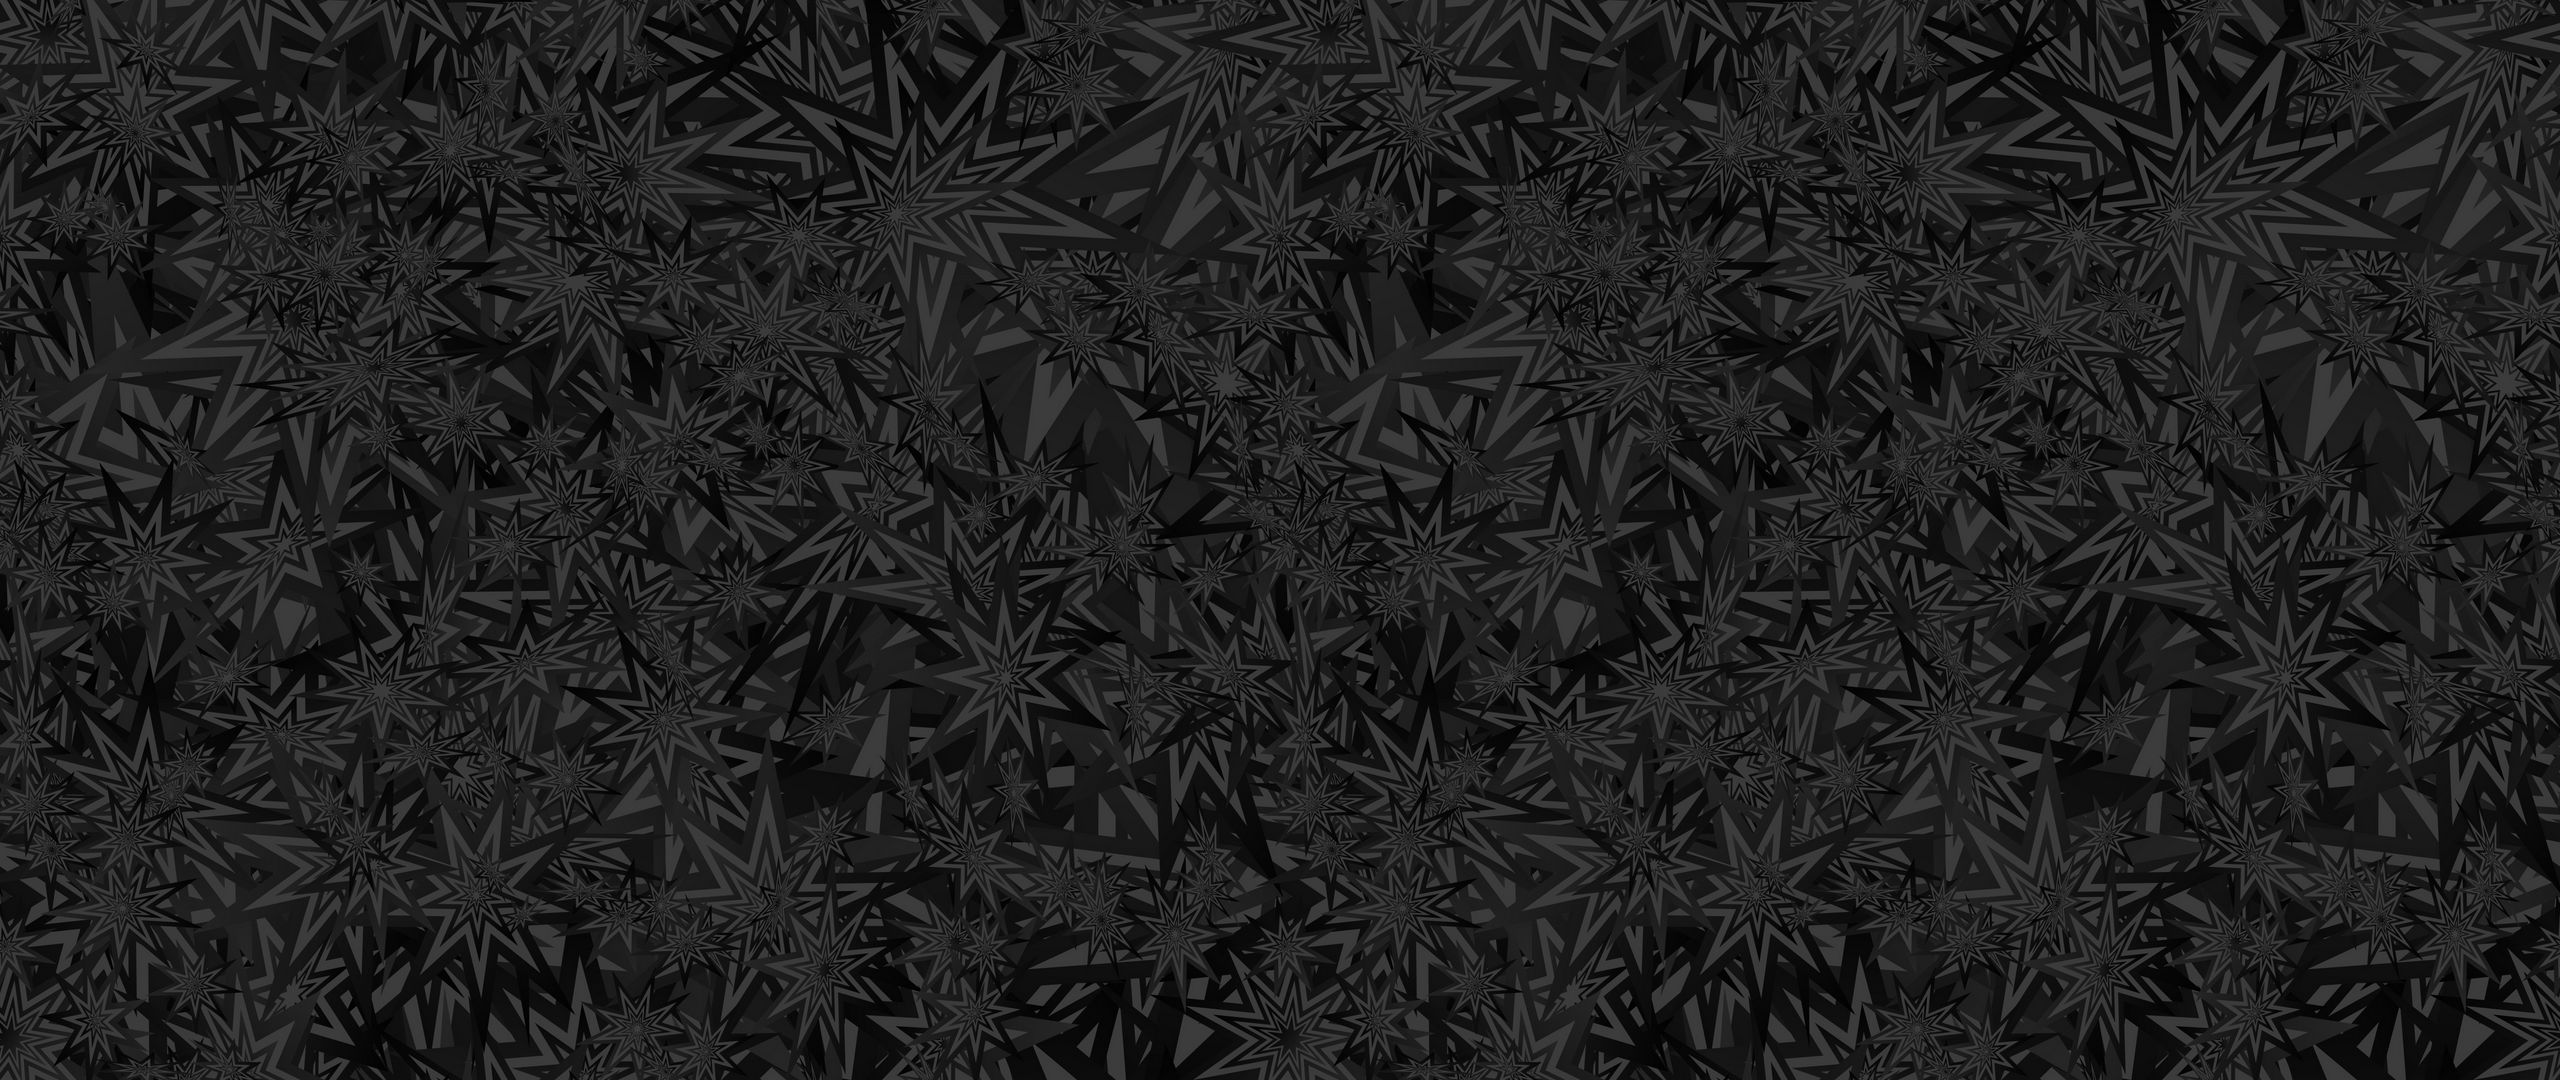 Download wallpaper 2560x1080 stars, patterns, black, texture, ornament ...